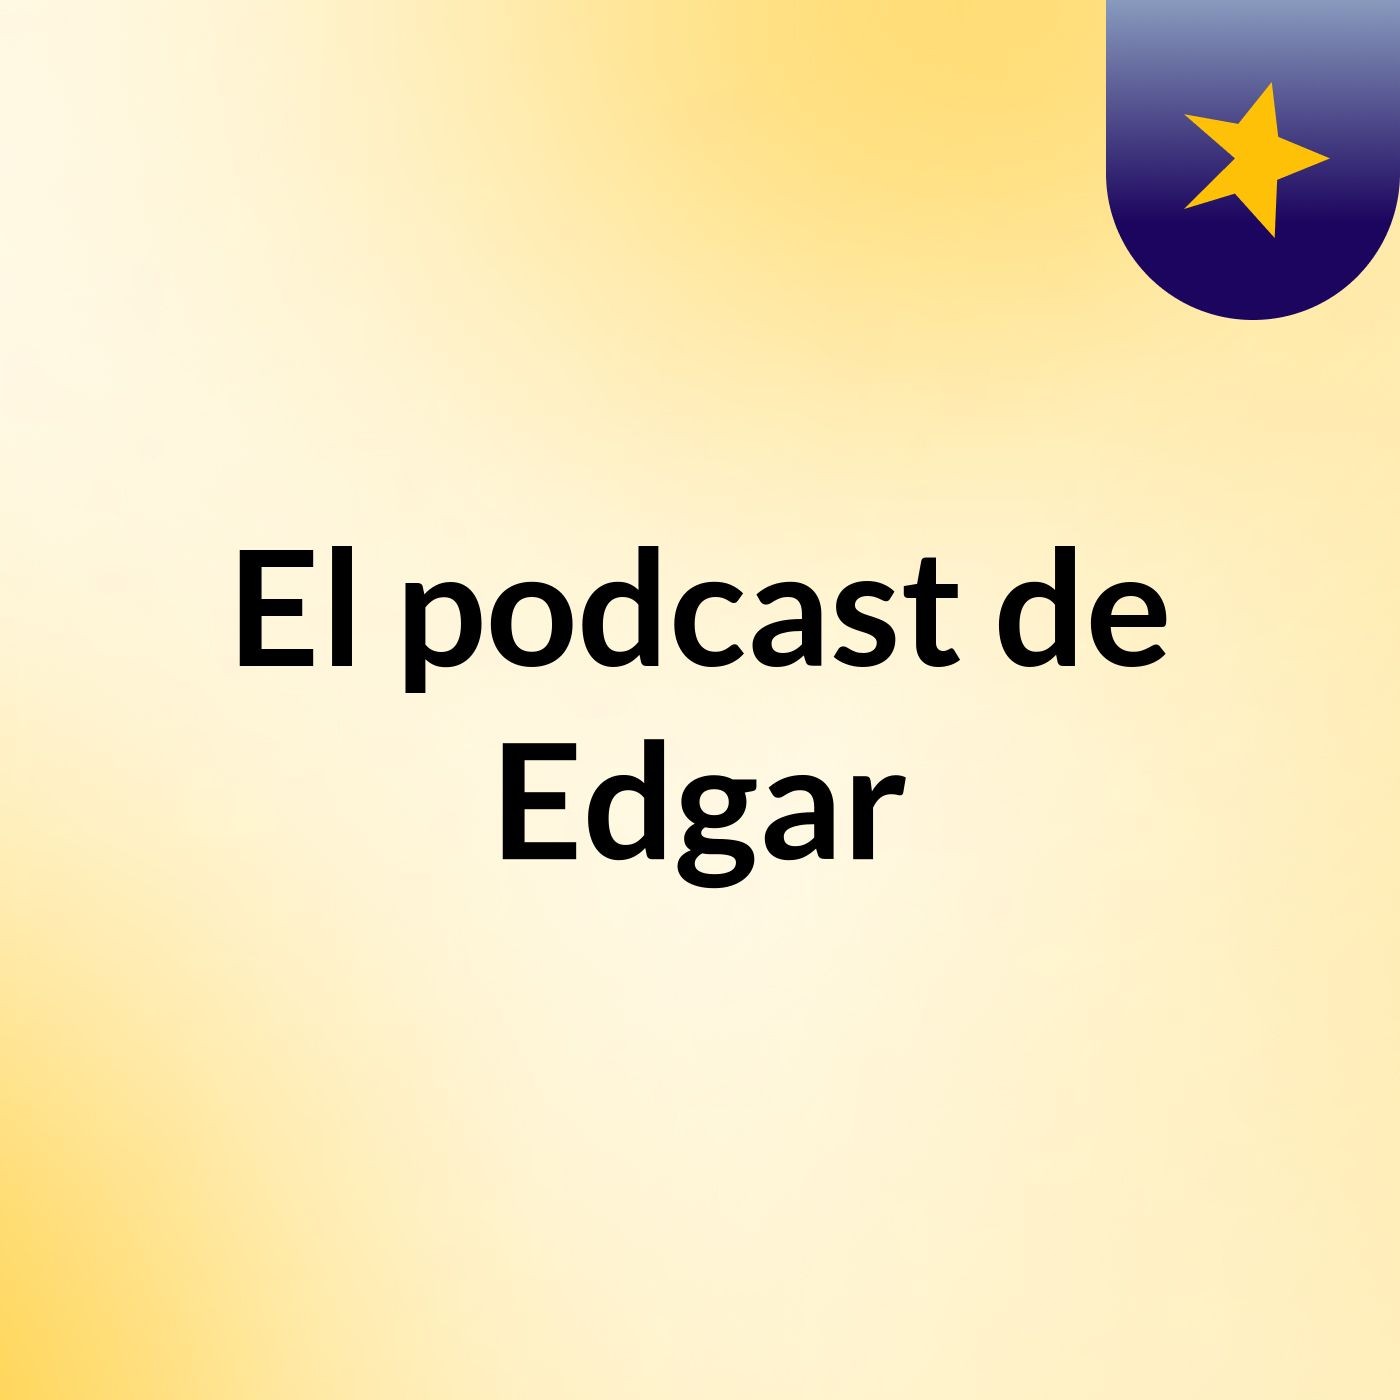 El podcast de Edgar